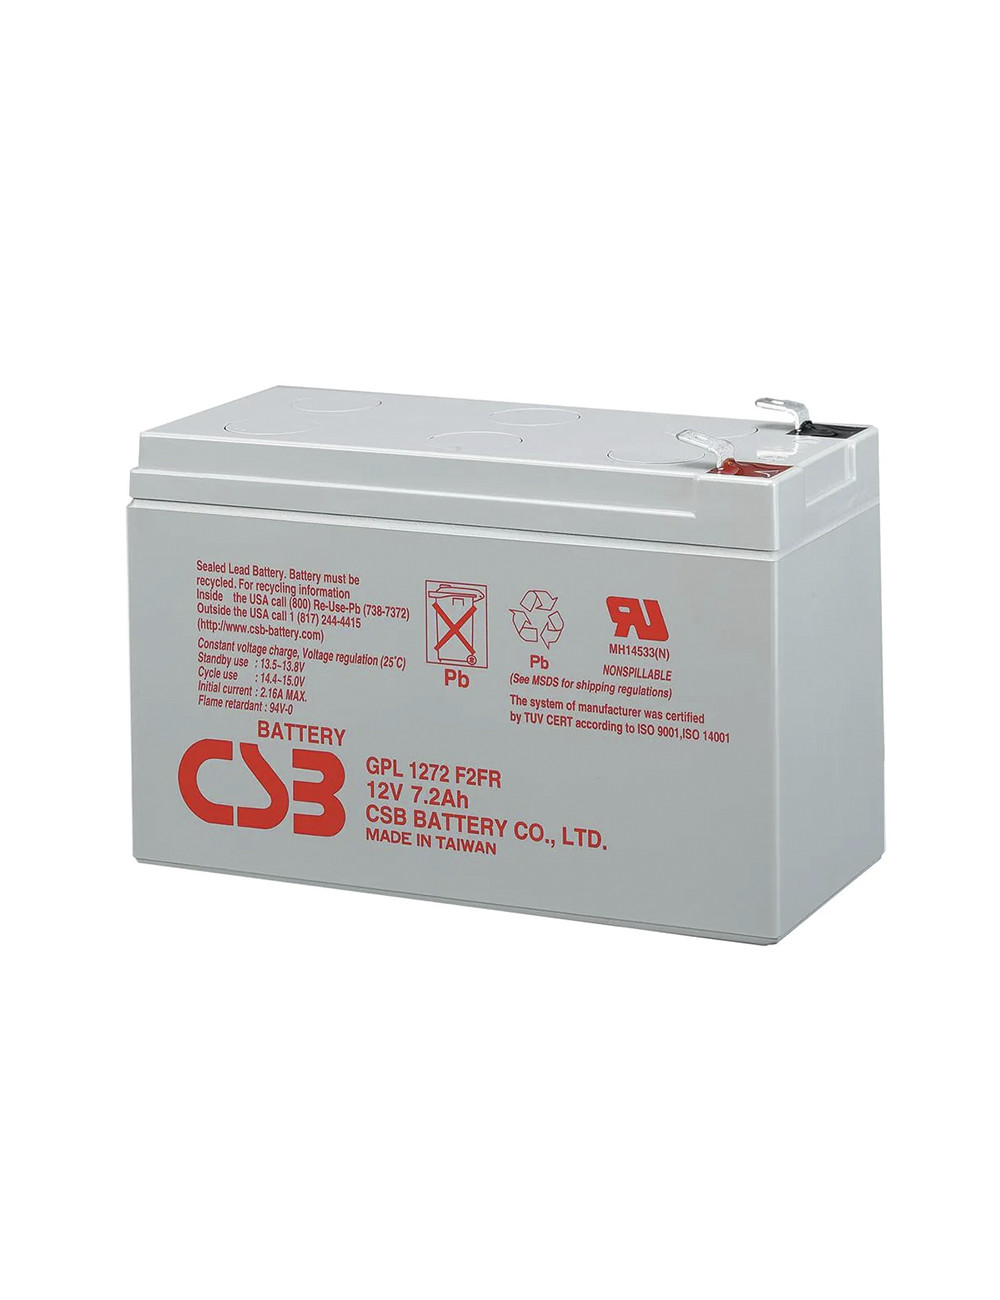 Batería 12V 7,2Ah C20 CSB GPL1272 F2FR con tecnología FR (retardante de llama) - CSB-GPL1272F2FR -  -  - 1